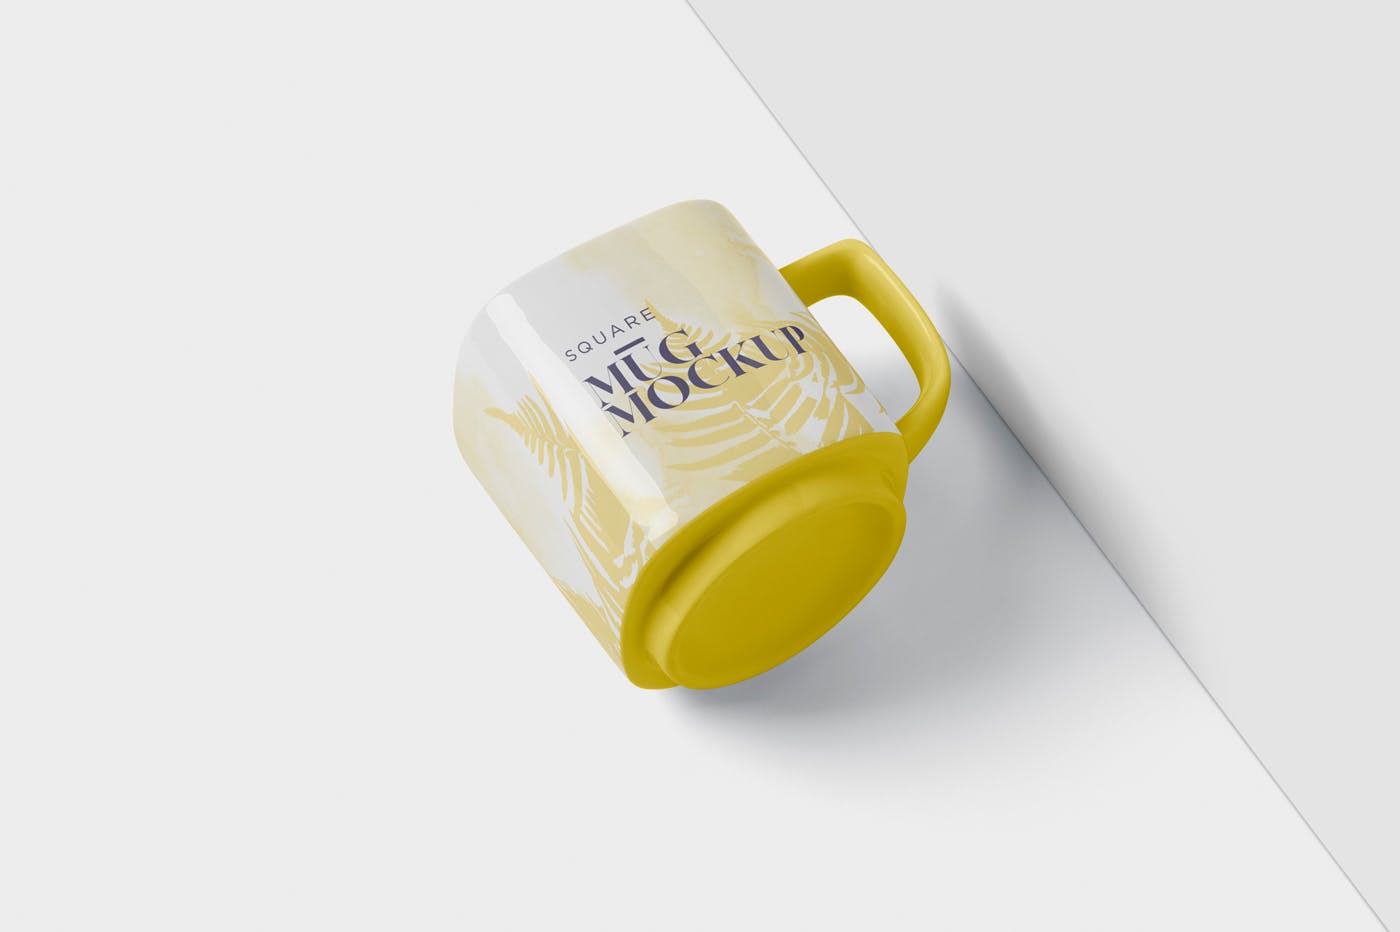 方形马克杯图案设计第一素材精选模板 Mug Mockup – Square Shaped插图(3)